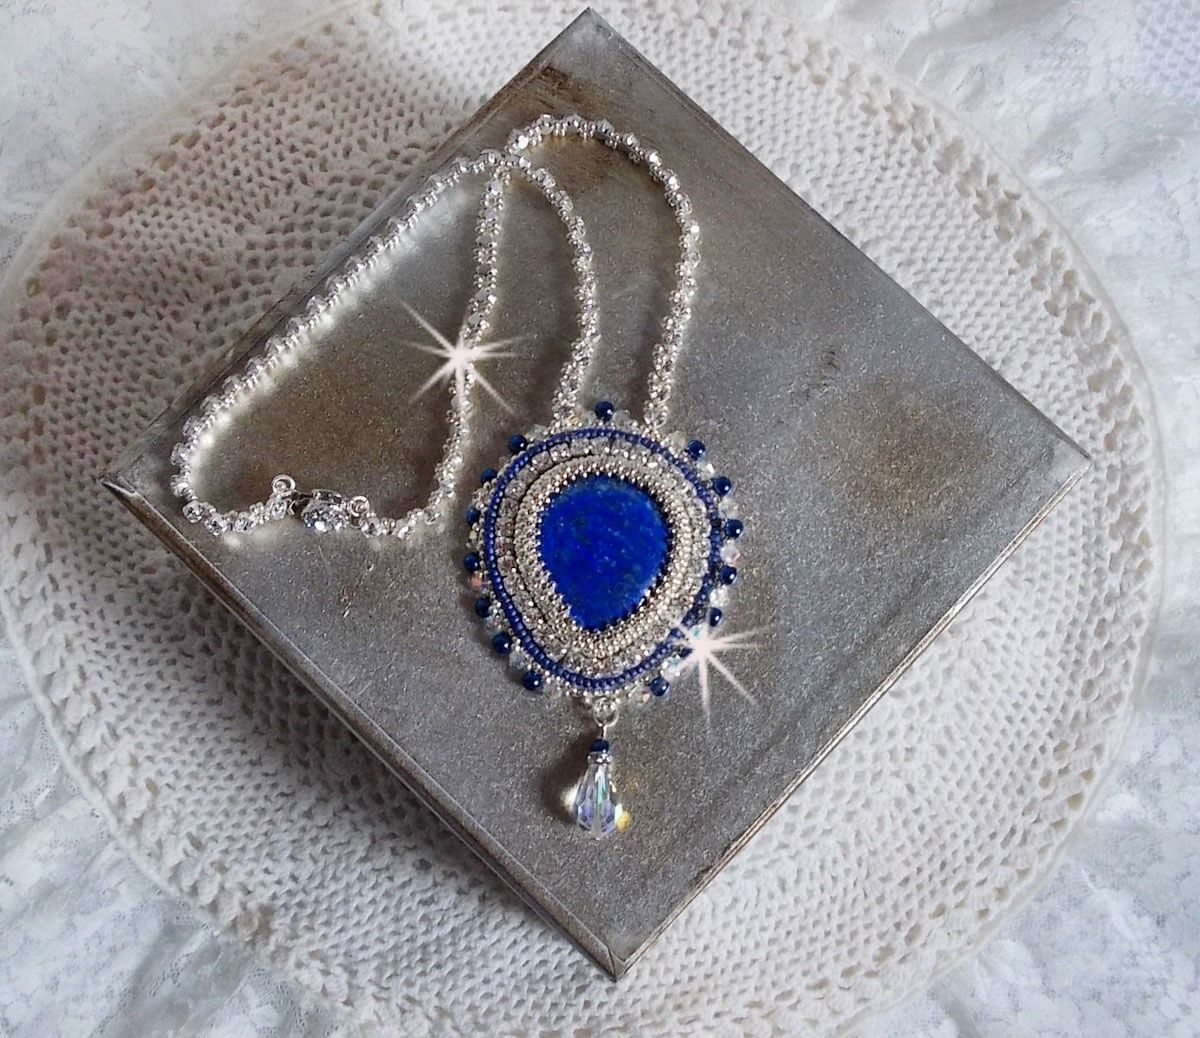 Collier Nil Bleu brodé avec une pierre de gemme : un Lapis Lazuli en forme de poire, cristaux : chatons, gouttes et toupies Cristal, perles rondes nacrées en Verre Bleu Marine et rocailles Argentées